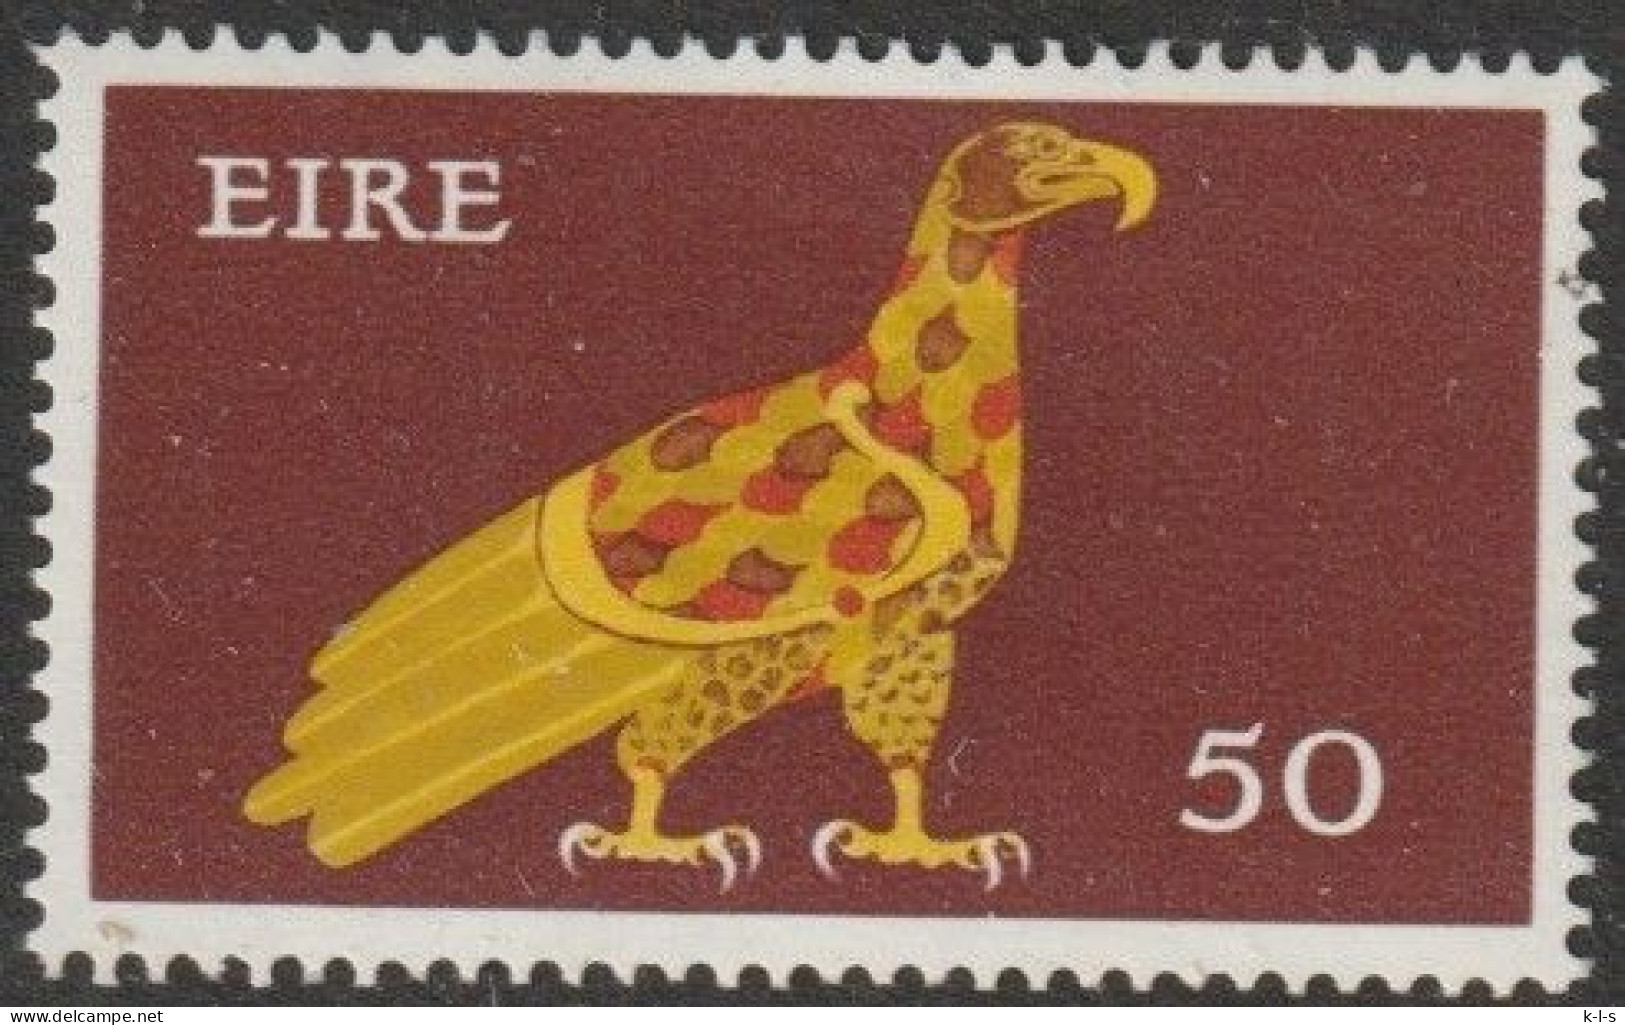 Irland: 1971, Mi. Nr. 264 XA, Freimarke: Frühe Irische Kunst, 50 P. Adler.  **/MNH - Unused Stamps